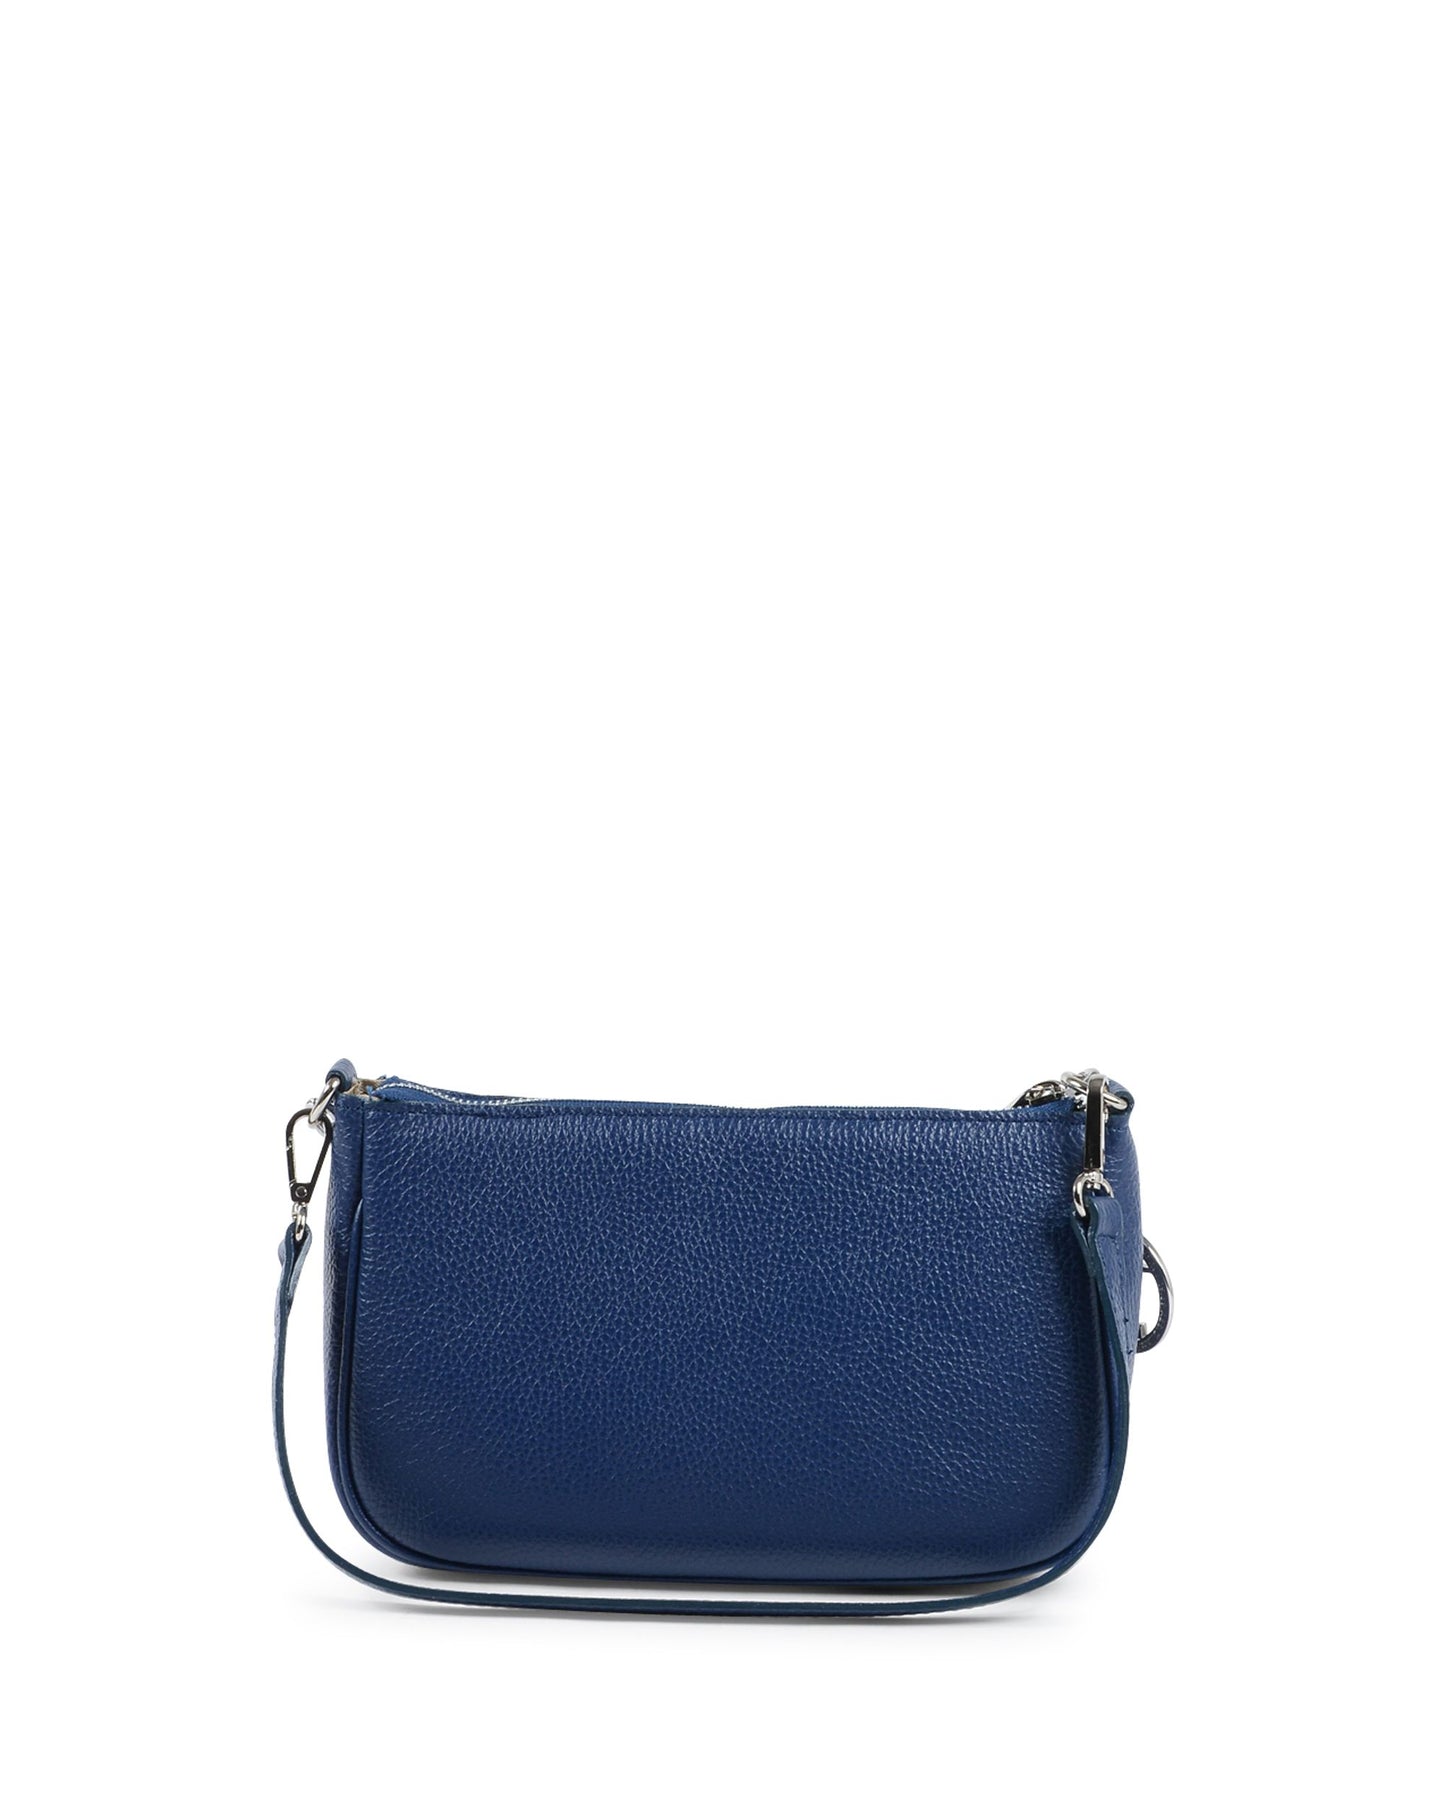 V Italia Womens Mini Bag Blue VE1735 CERVO BLUE JEANS